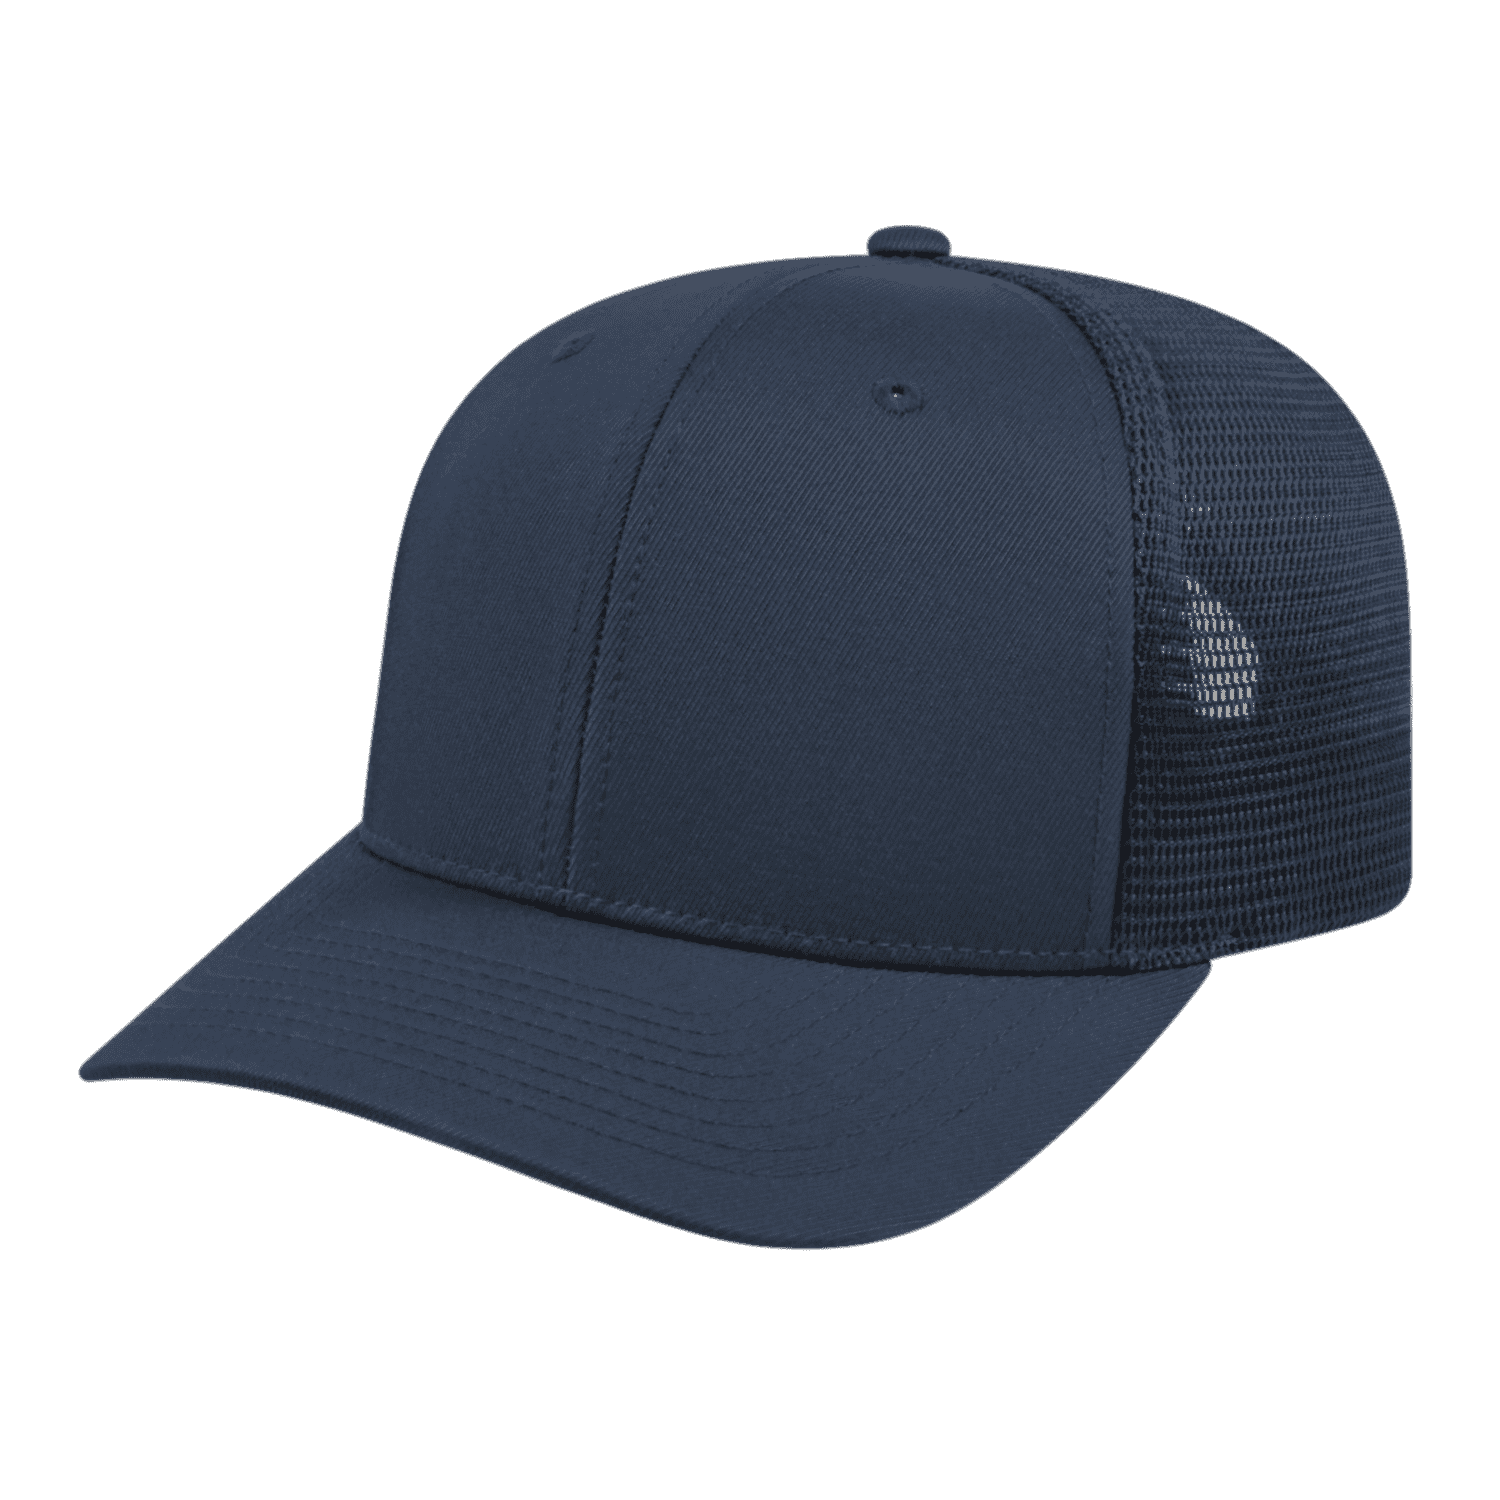 Mesh Back Cap Cap - Trucker Flexfit America Navy 110 i8502